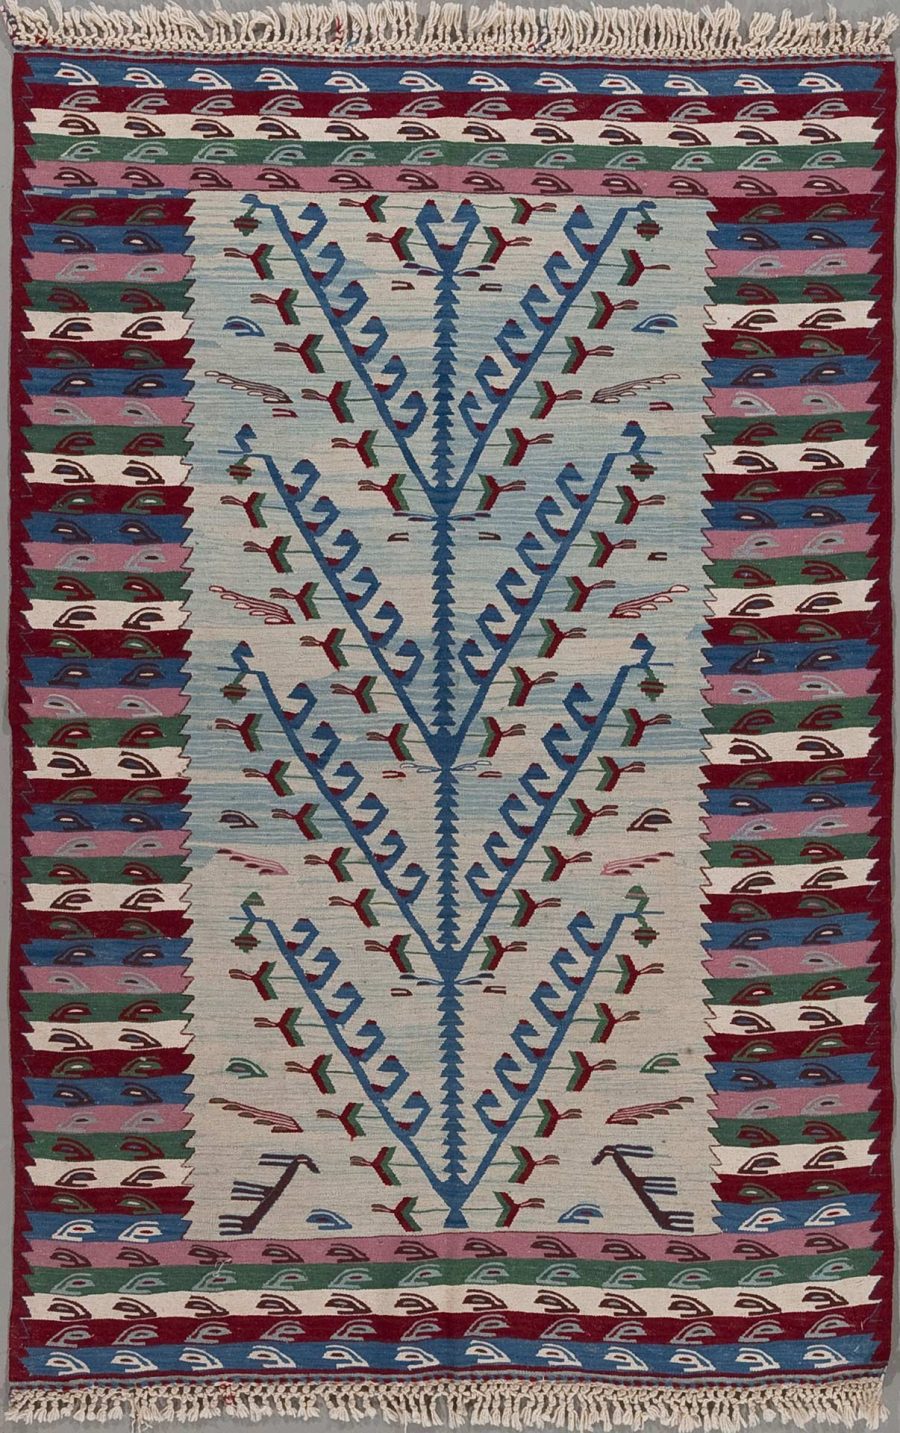 Handgewebter Teppich mit traditionellem geometrischem Muster in Blau, Rot, Grün und Beige, umrahmt von einer dekorativen Grenze und Fransen an den kurzen Seiten.